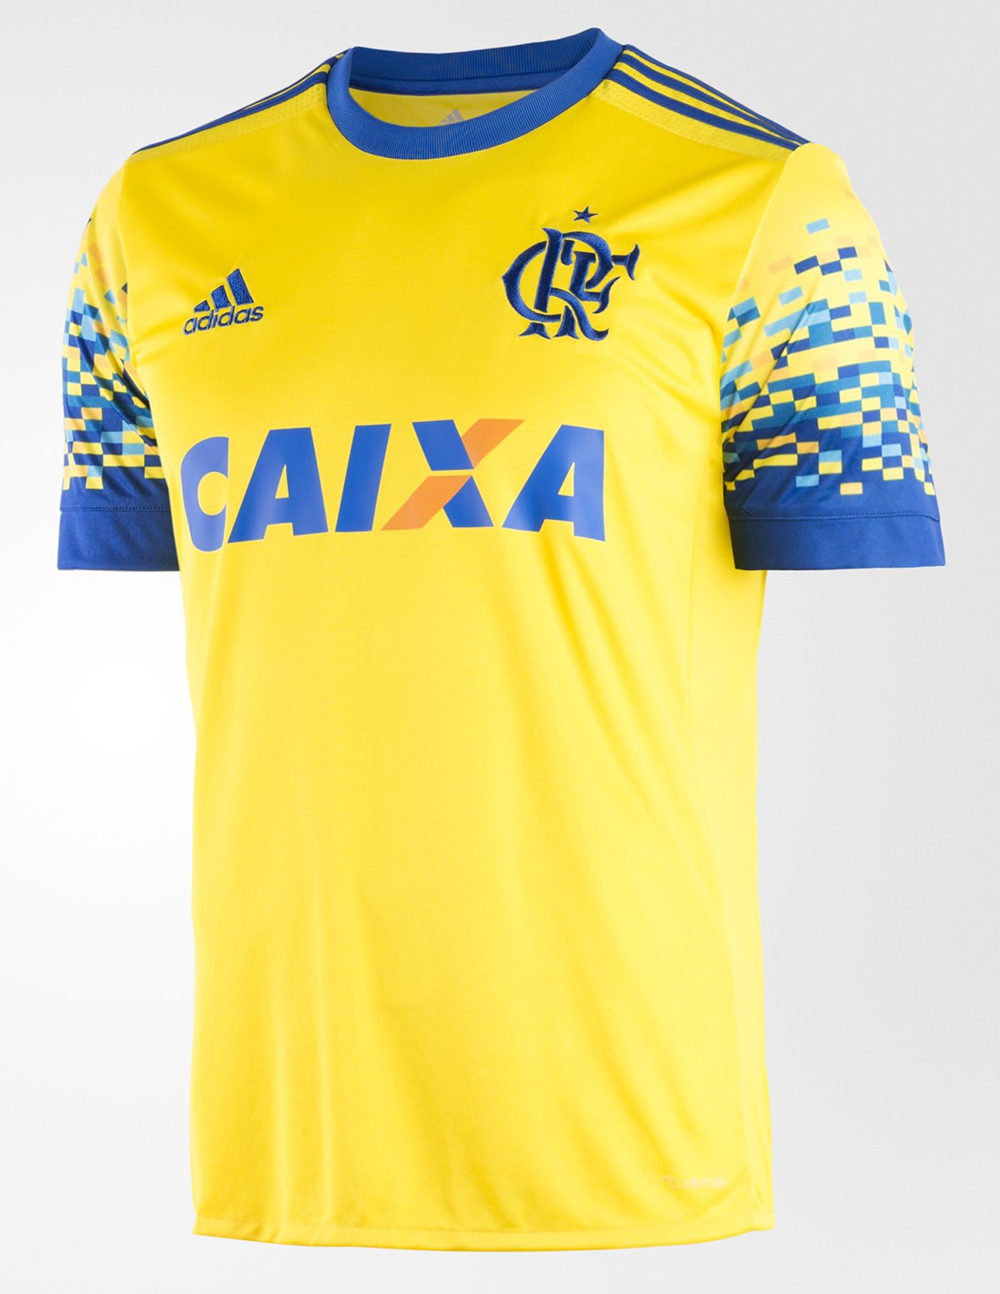 Terceira camisa adidas do Flamengo 2017 18